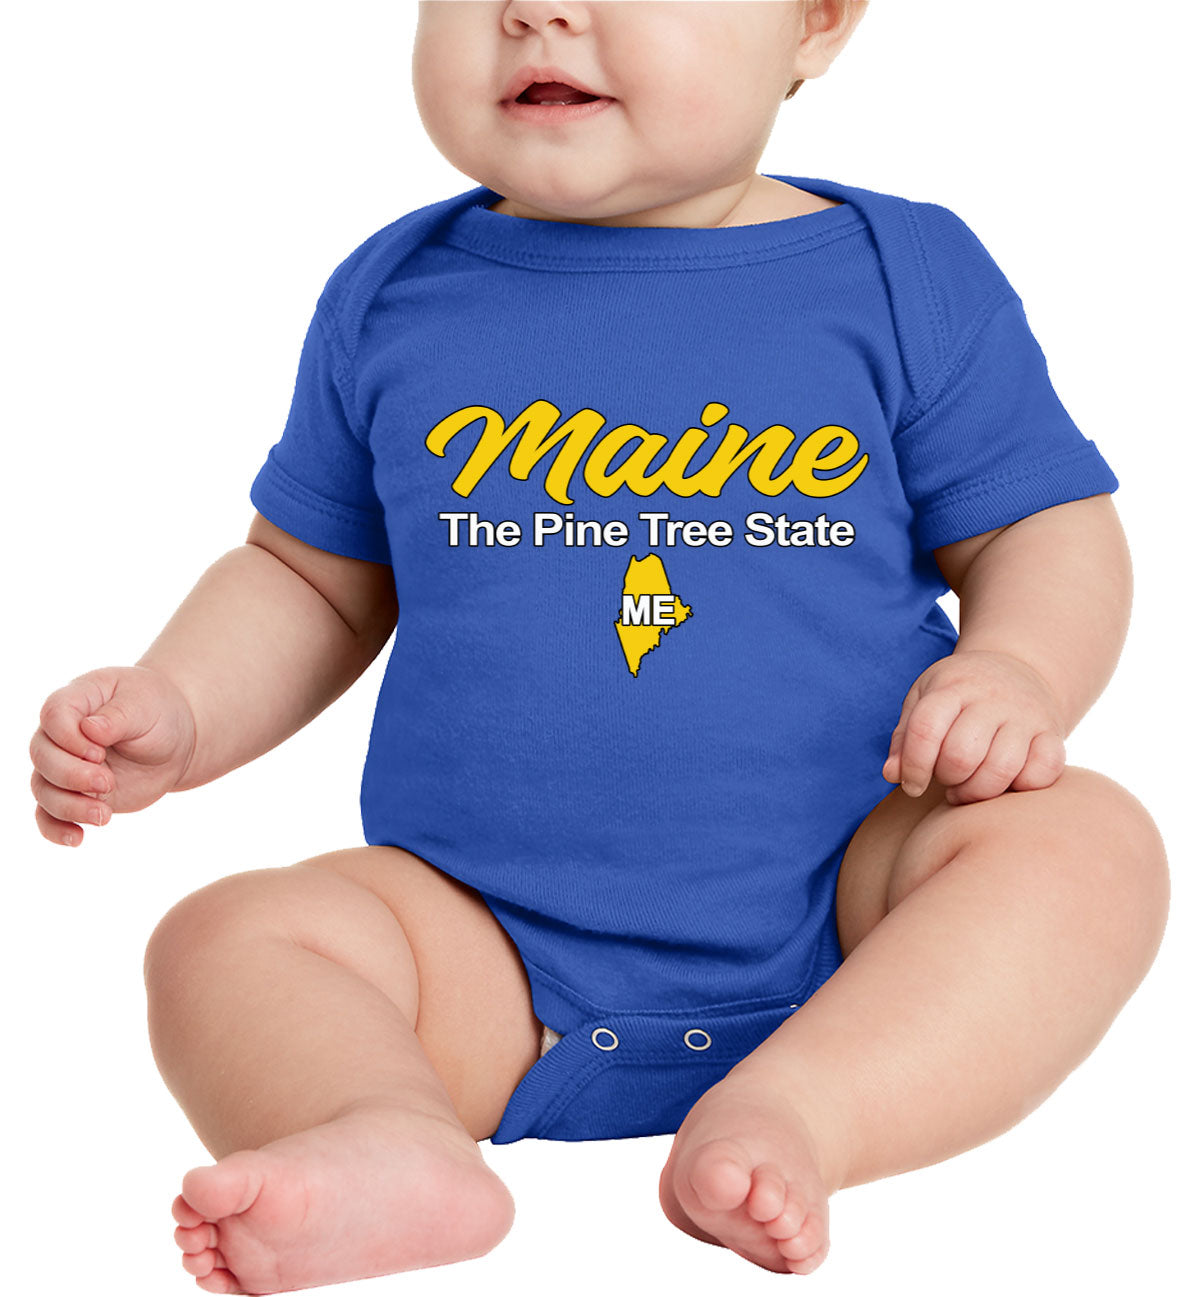 Maine The Pine Tree State Baby Onesie